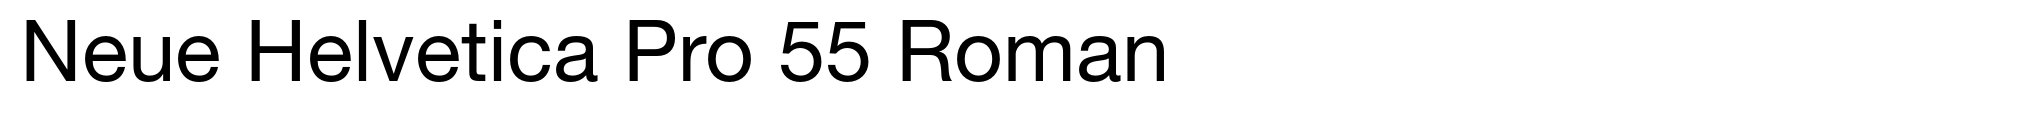 Neue Helvetica Pro 55 Roman image